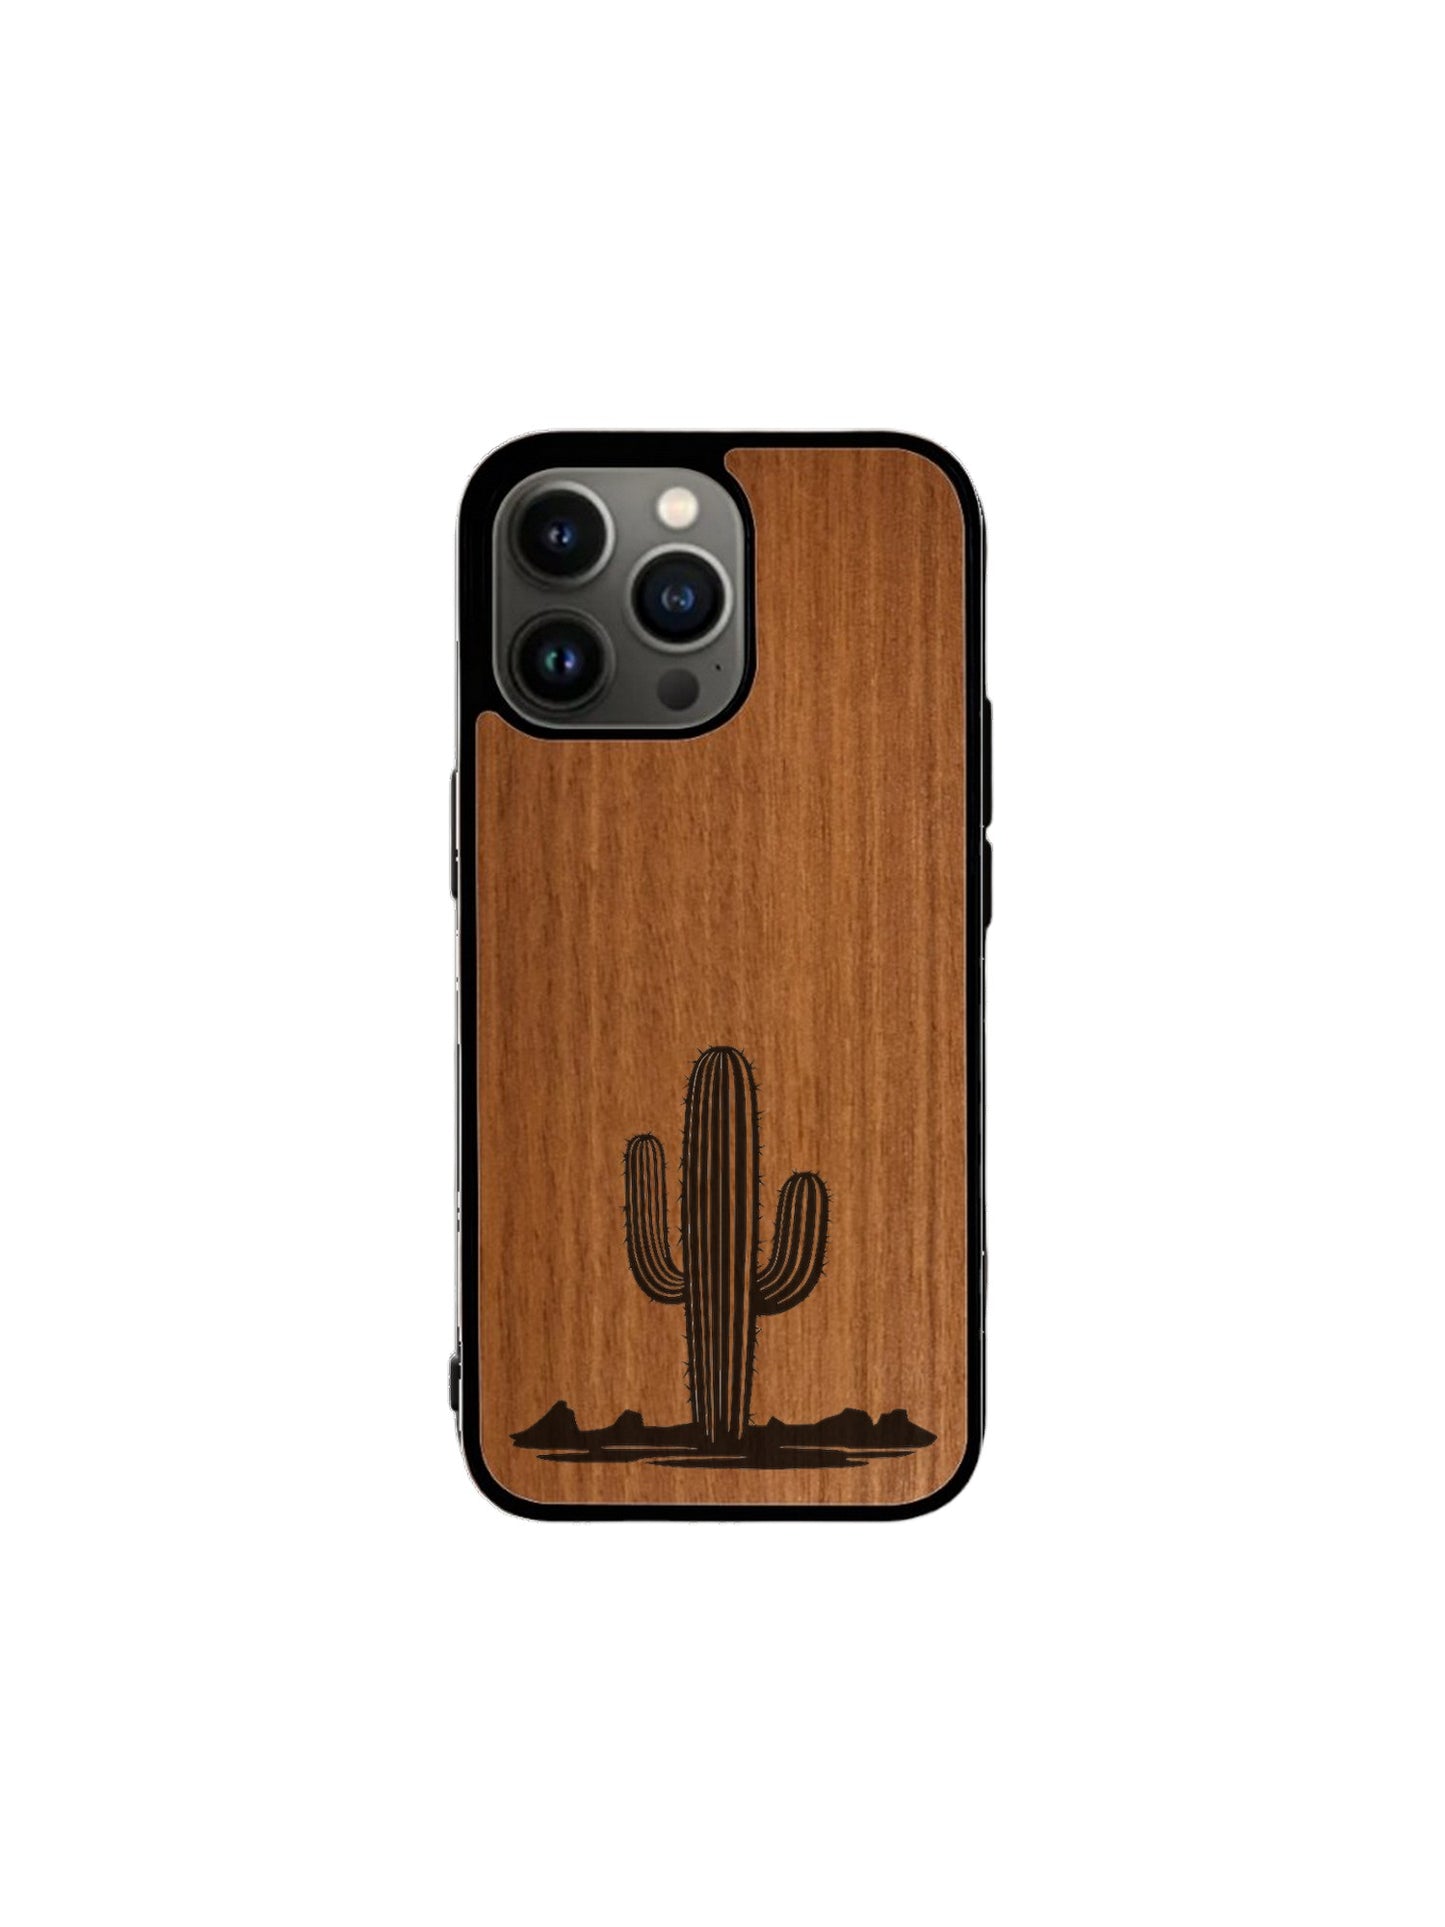 Coque Iphone - Kaktus piquant